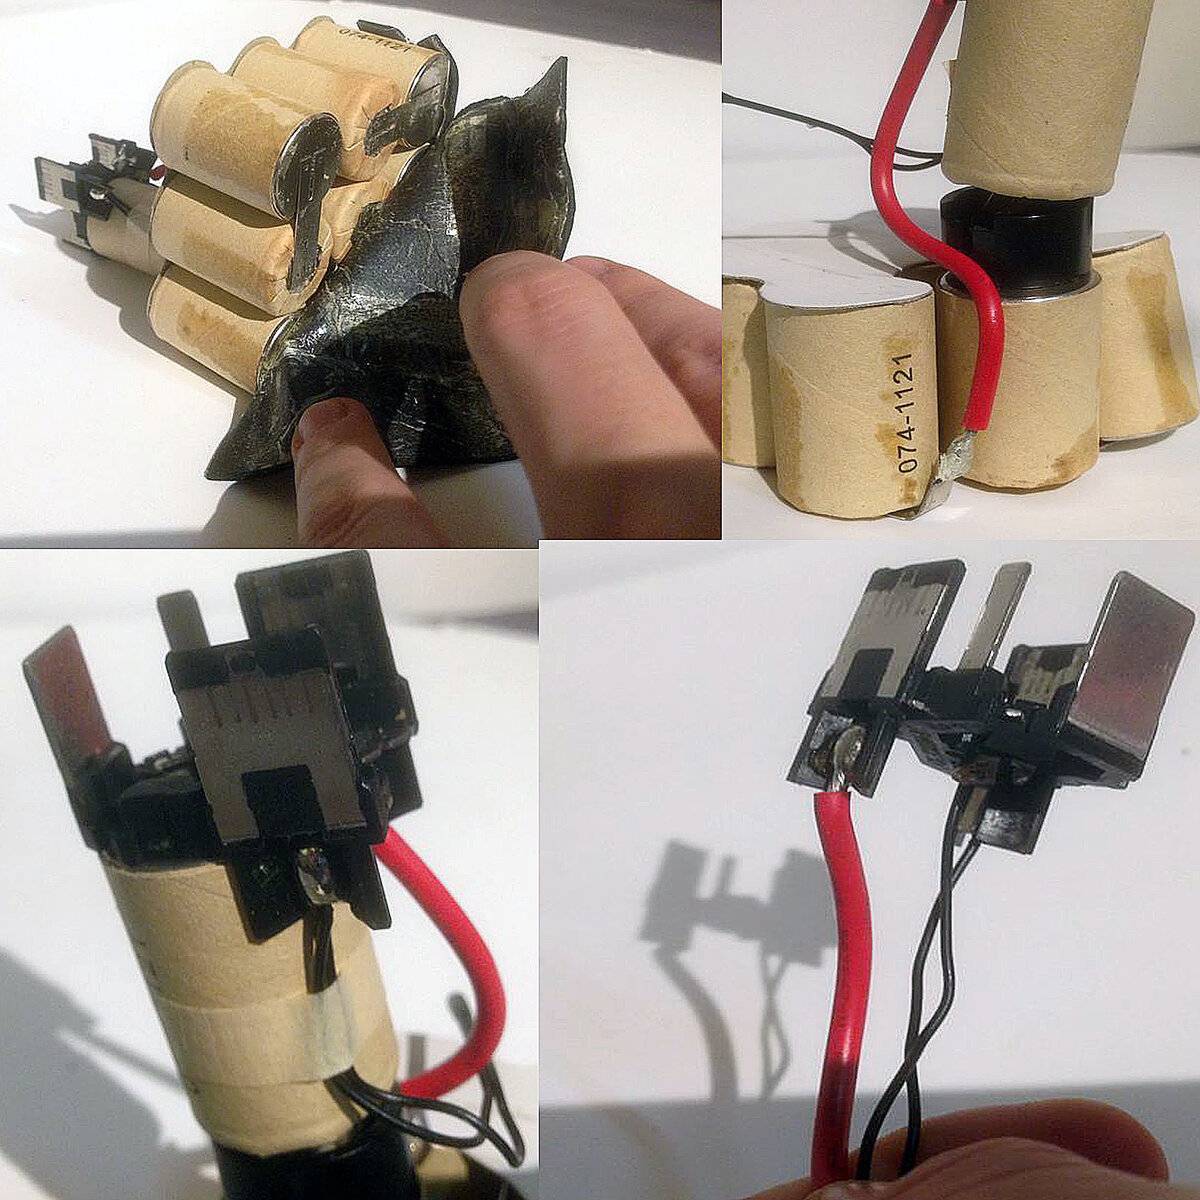 Переделка аккумуляторного шуруповерта на питание от сети 220в: из чего сделать блок питания